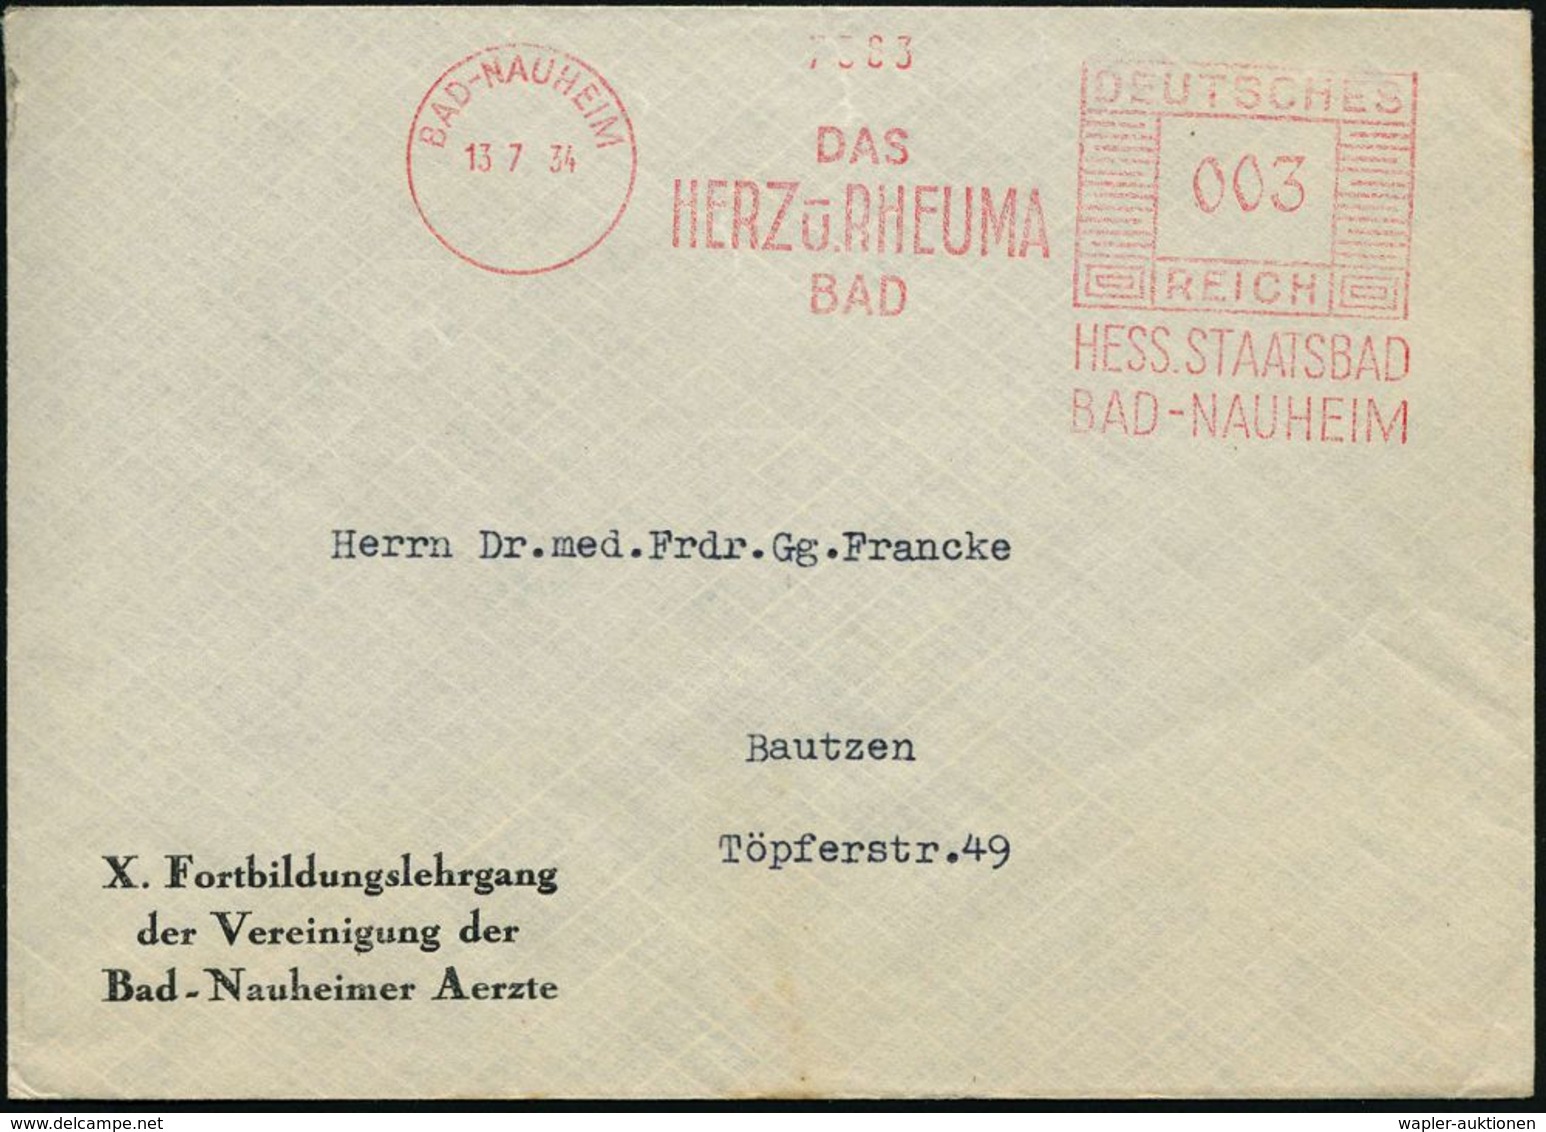 RHEUMATISMUS : BAD-NAUHEIM/ DAS/ HERZ U.RHEUMA/ BAD/ HESS.STAATSBAD.. 1934 (13.7.) AFS Auf Vordruck-Bf.: X. Fortbildungs - Krankheiten